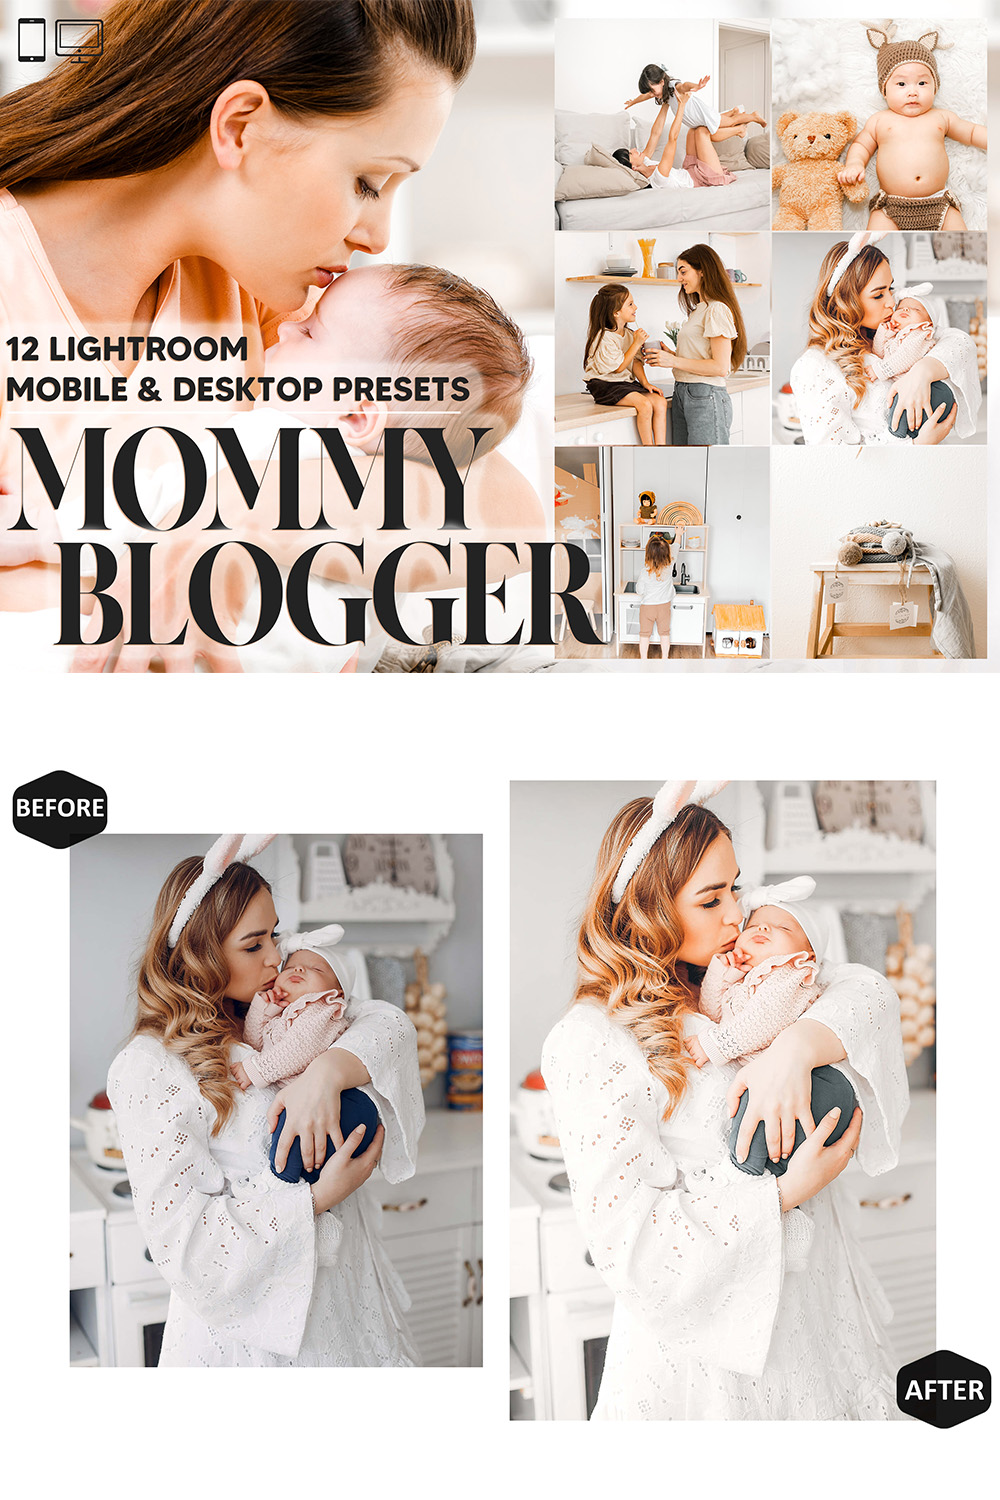 12 Mommy Blogger Lightroom Presets, Motherhood Mobile Preset, Mother Kids Desktop, Mom Lifestyle Theme For Instagram Portrait, LR Filter DNG pinterest preview image.